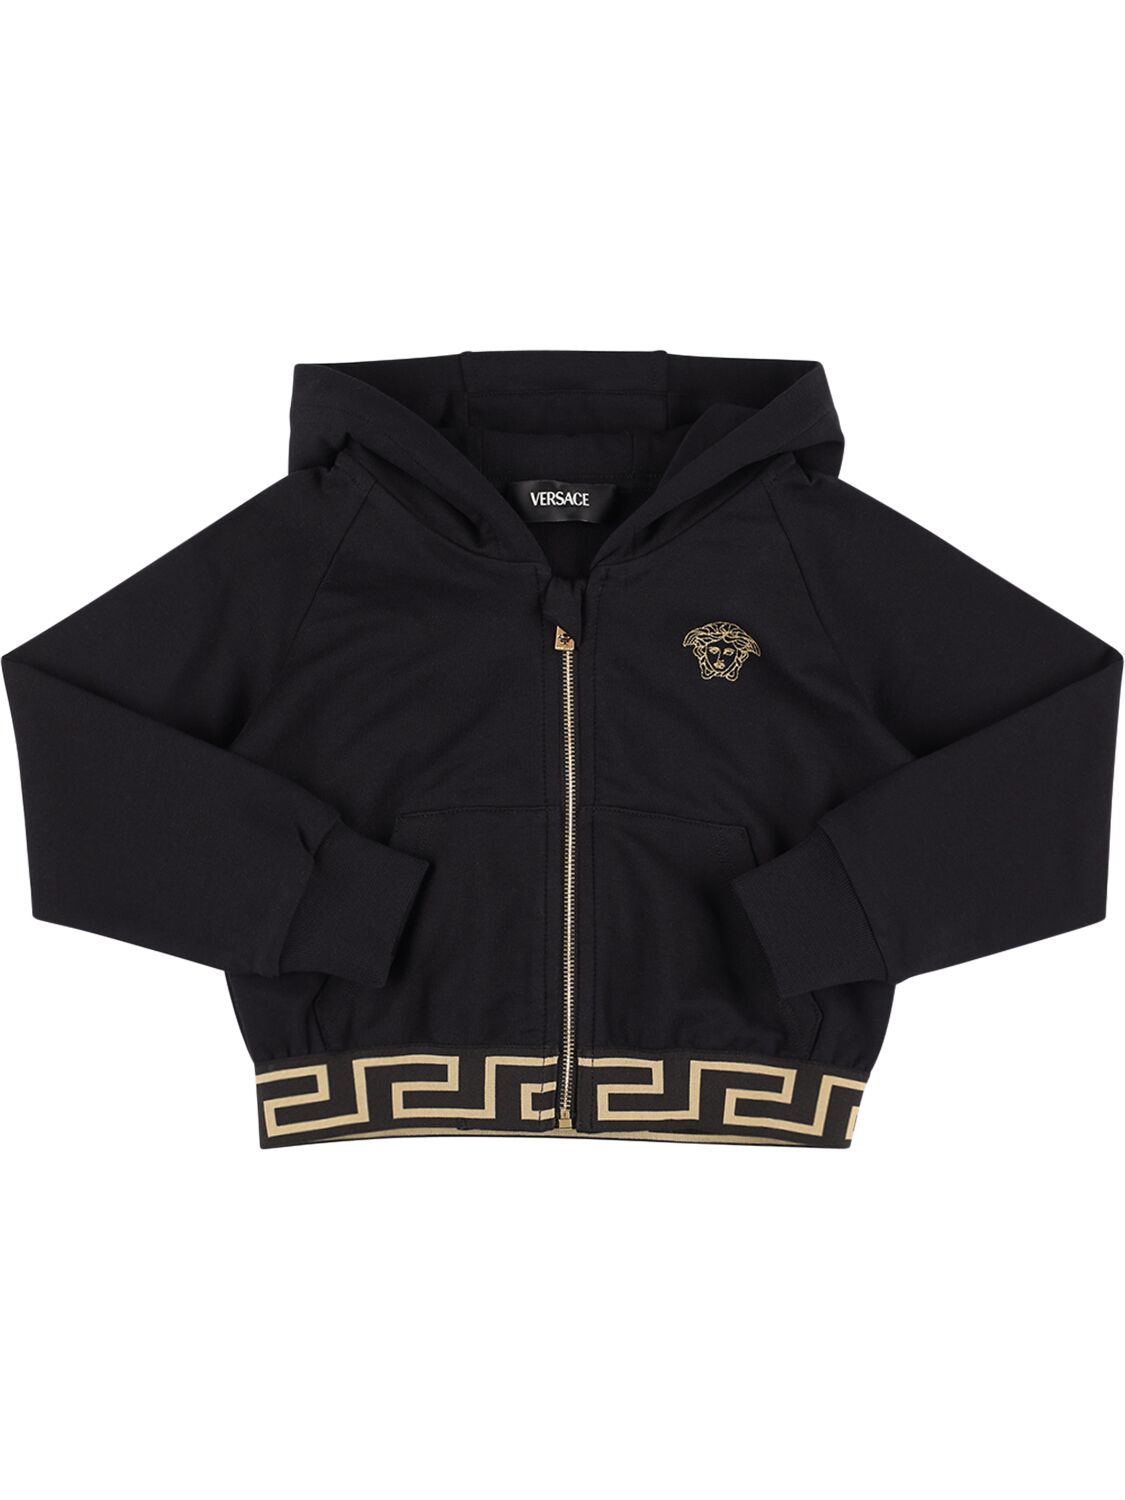 Versace Kids' Cotton Zip Hoodie In Black,gold